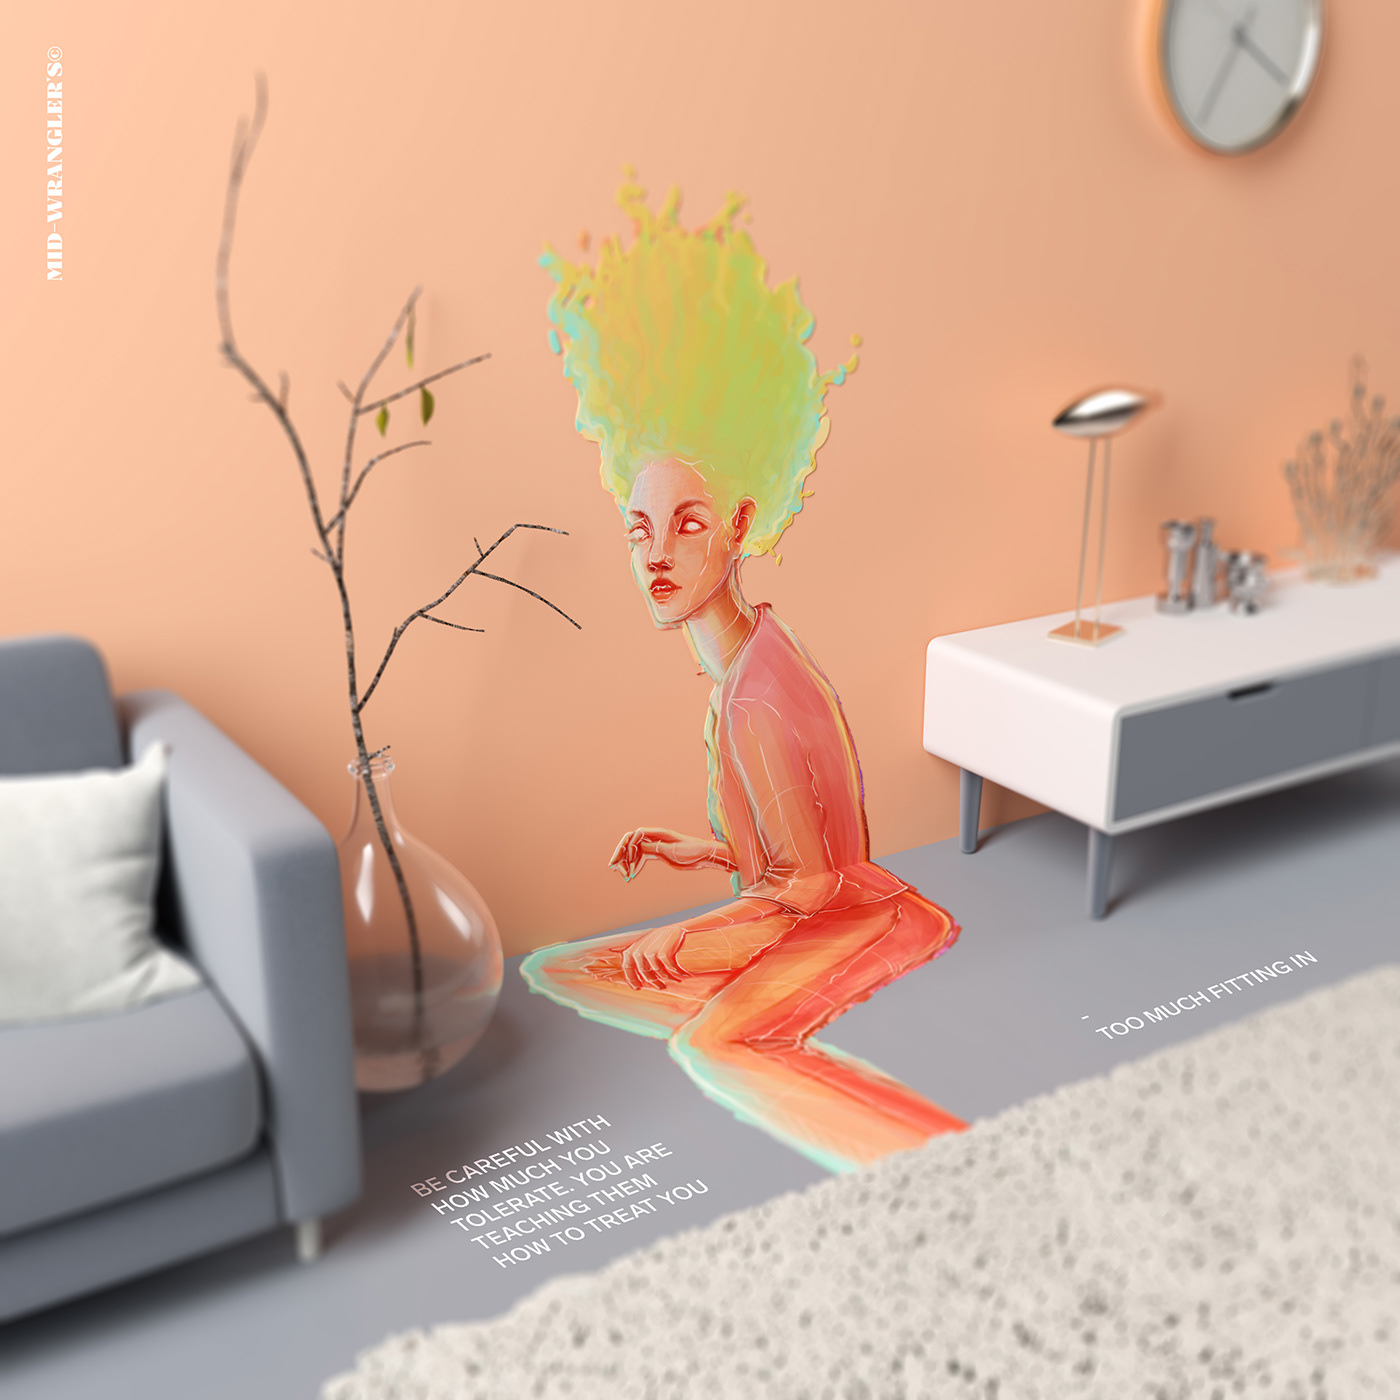 3D 2D ILLUSTRATION  visual concept art ArtDirection colors pantone Scenes